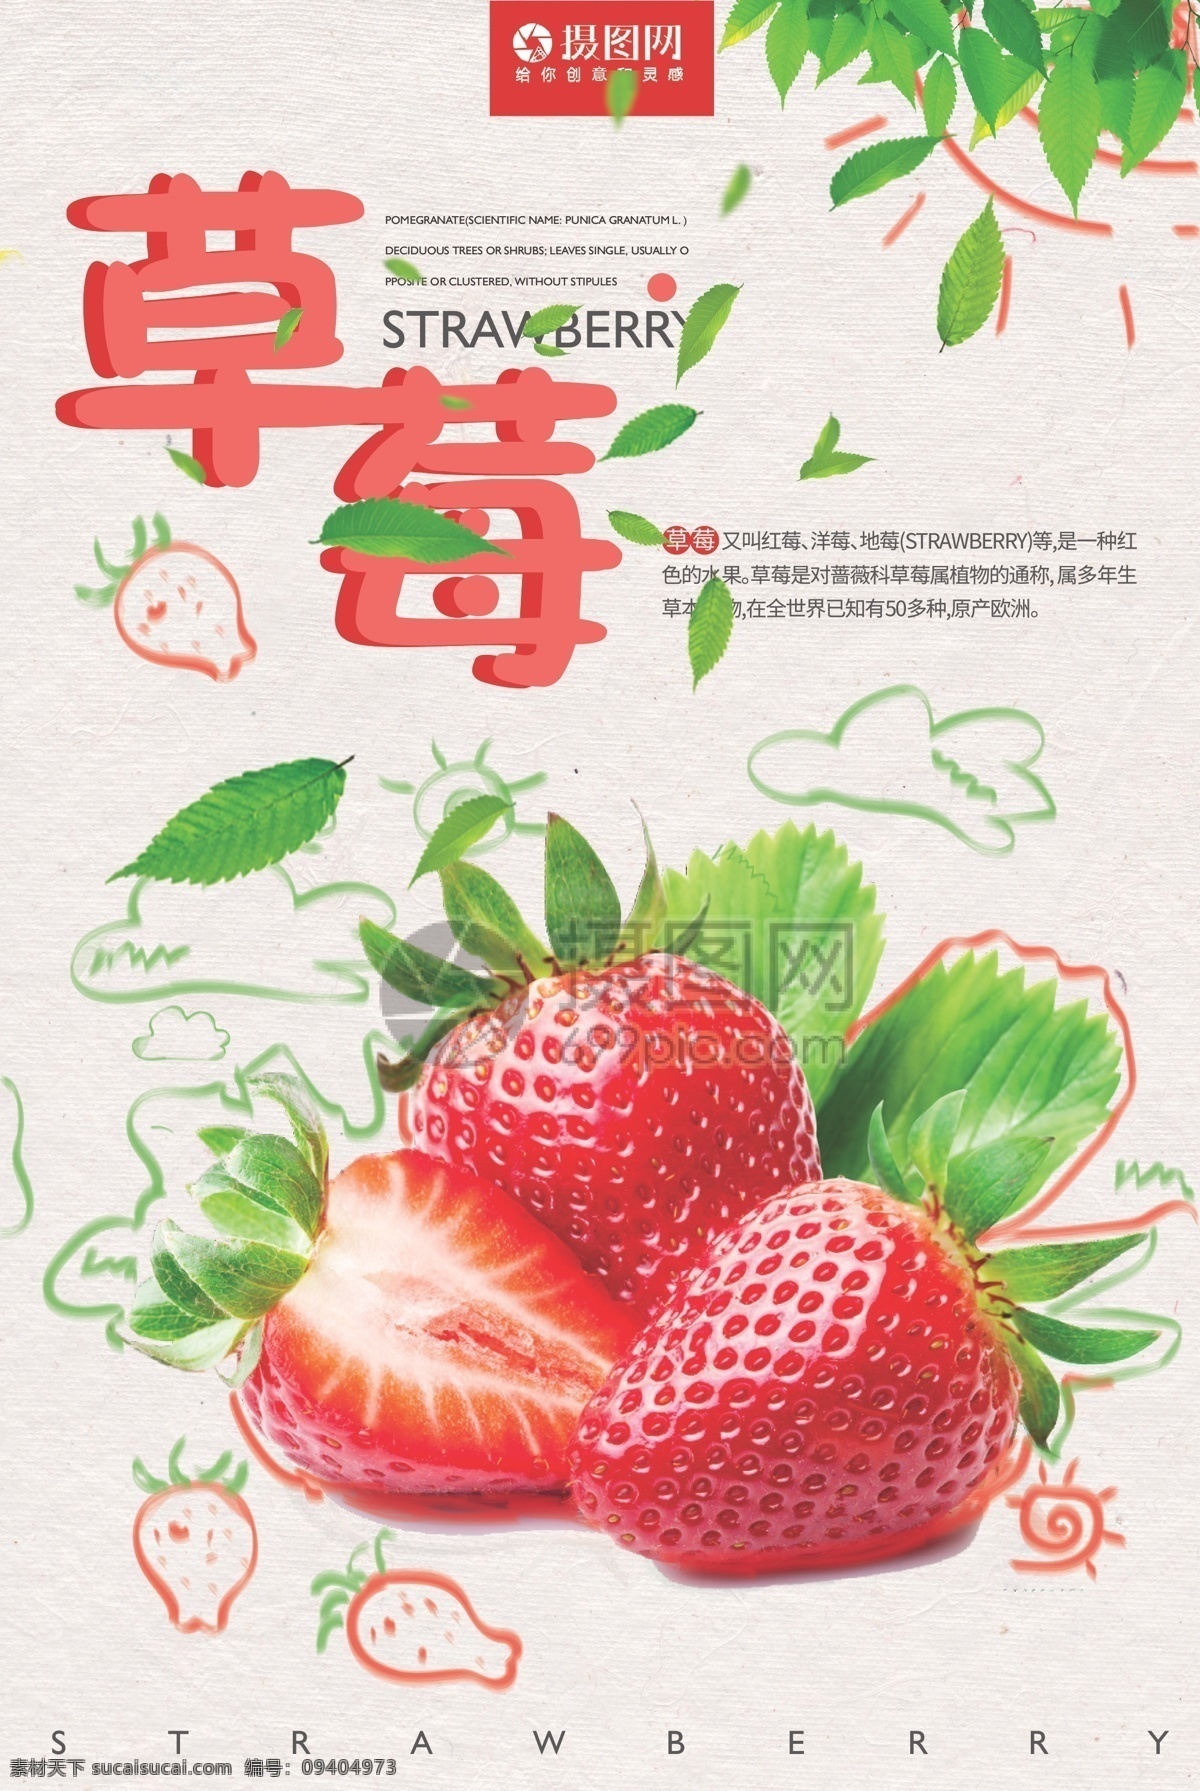 新鲜 红色 草莓 海报 水果 健康 绿色 有机 营养 维生素 草莓水果 手绘 水果促销 促销海报